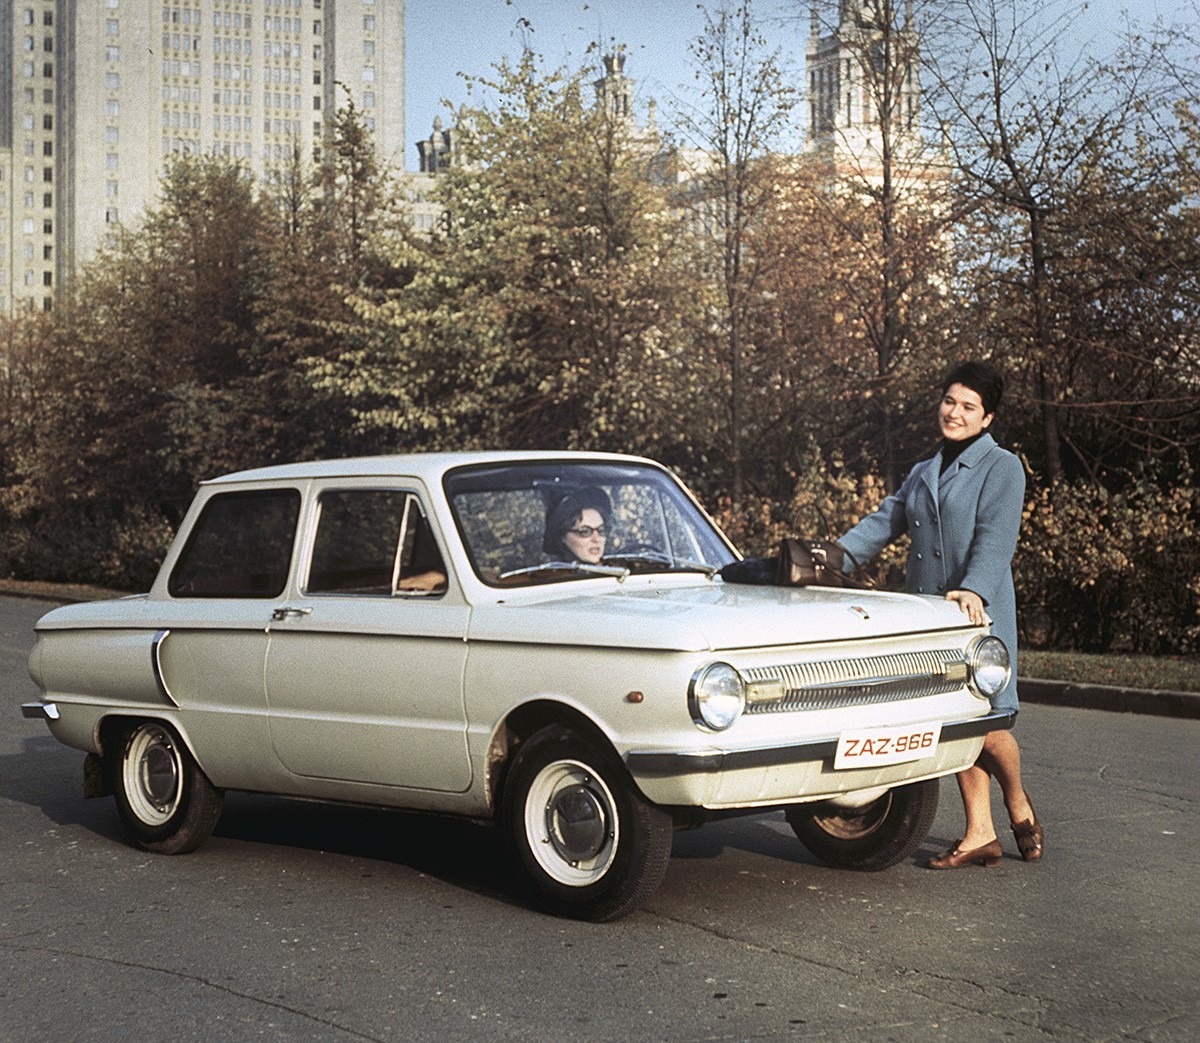 ZAZ-966, znan tudi kot »zaporožec«, iz Tovarne avtomobilov Zaporožje, proizveden leta 1970.

